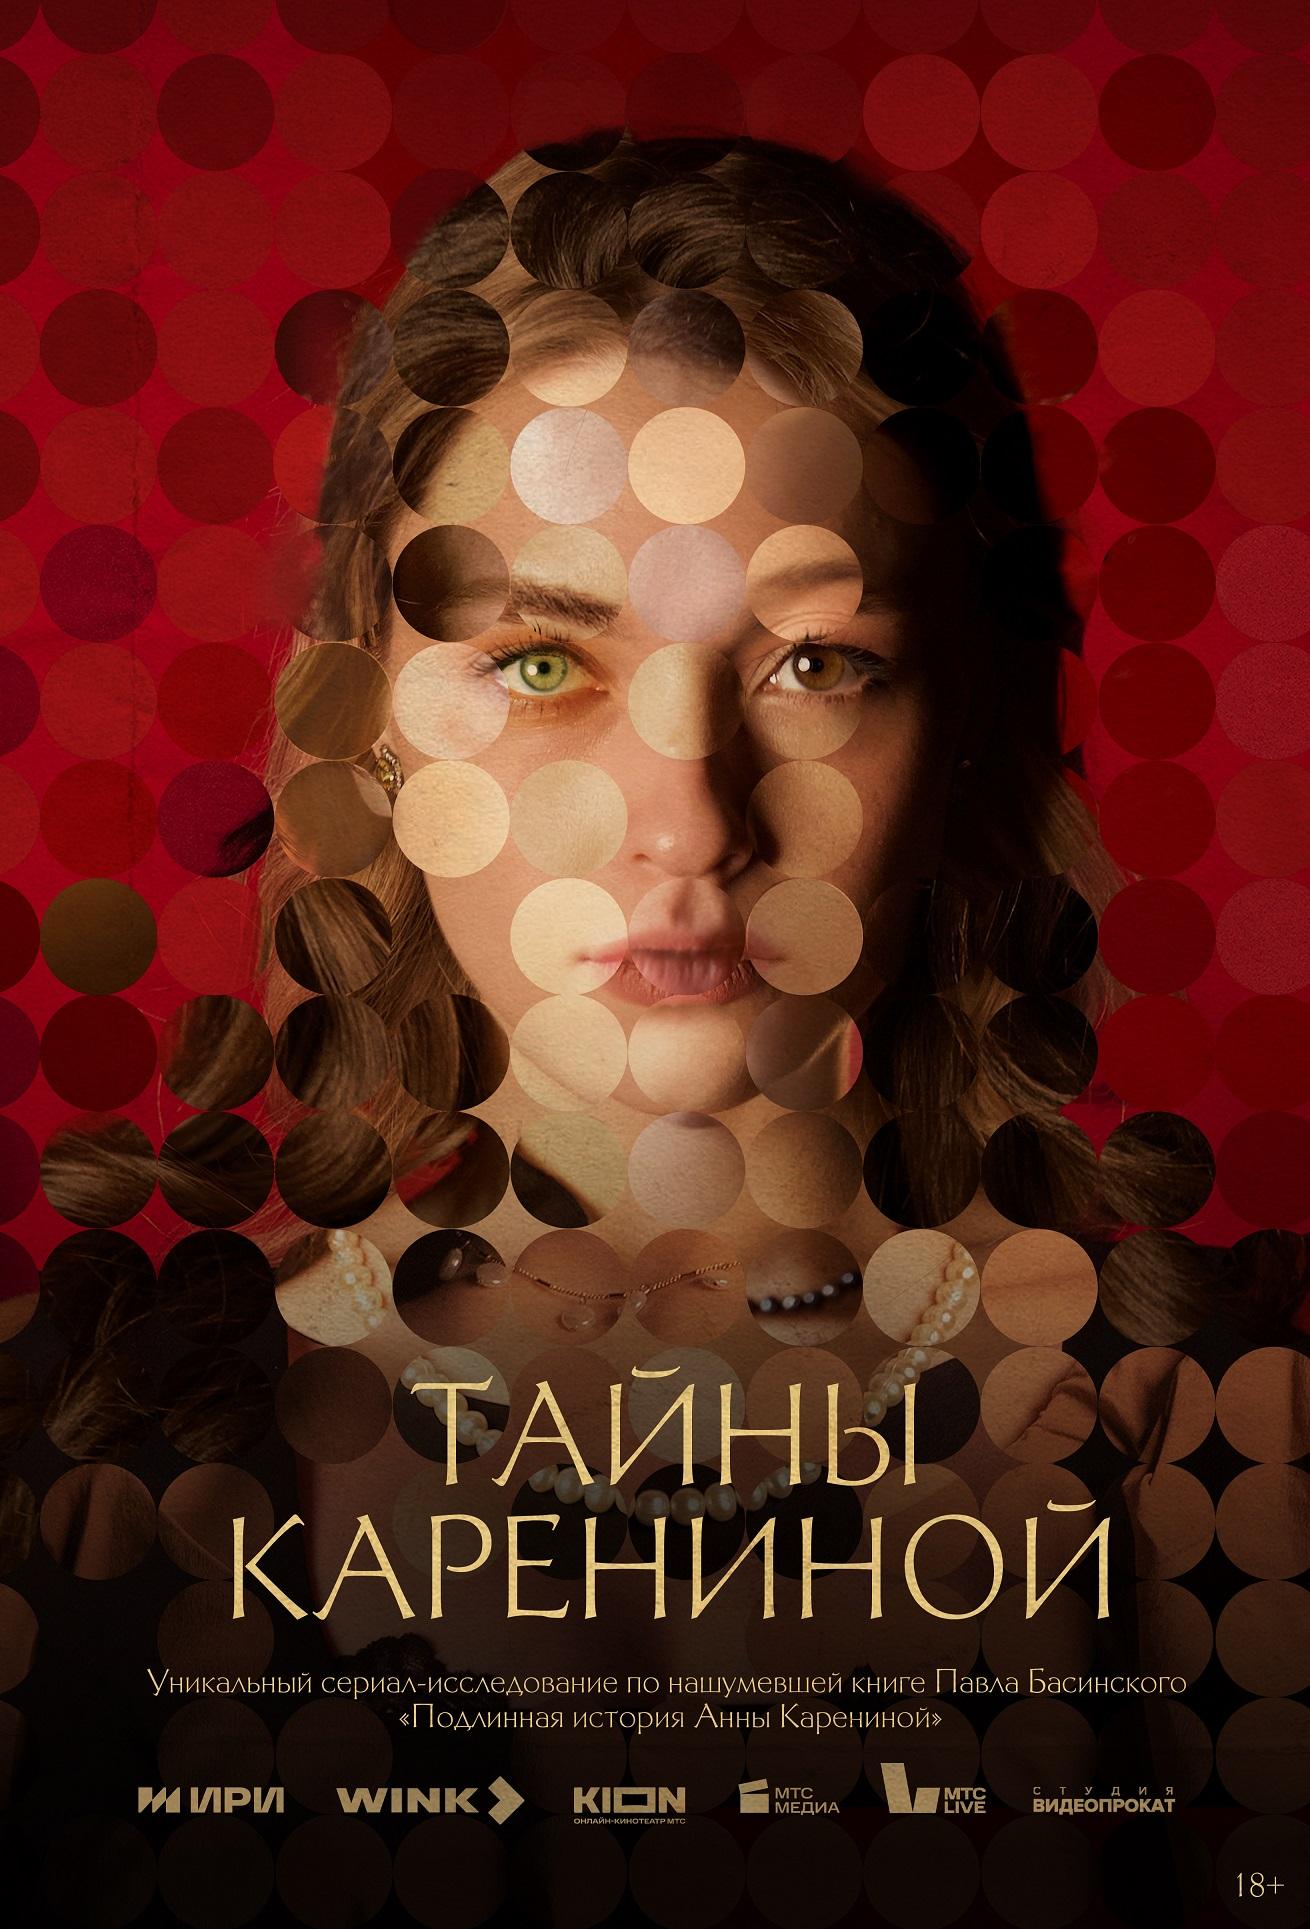 Фото Смотреть нельзя читать: к премьере сериала «Тайны Карениной» на Wink.ru и KION выйдет специздание книги Павла Басинского 2